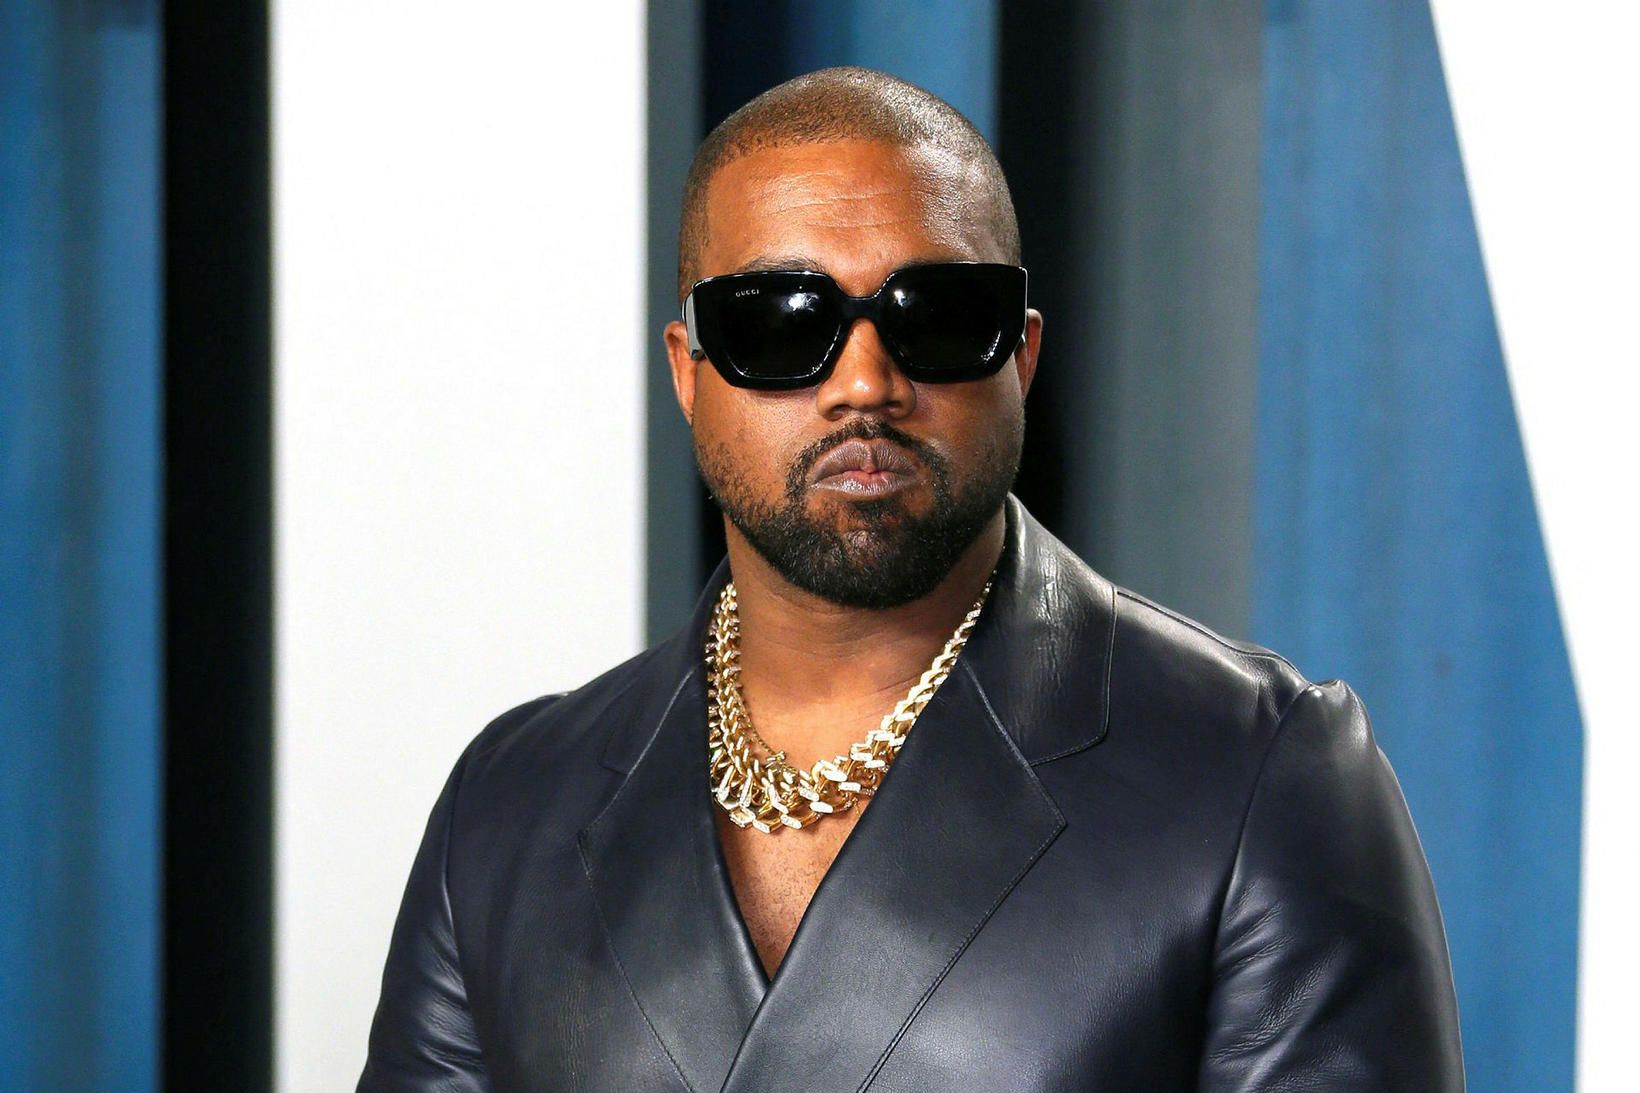 Kanye West hefur farið ófögrum orðum um fólk að undanförnu.